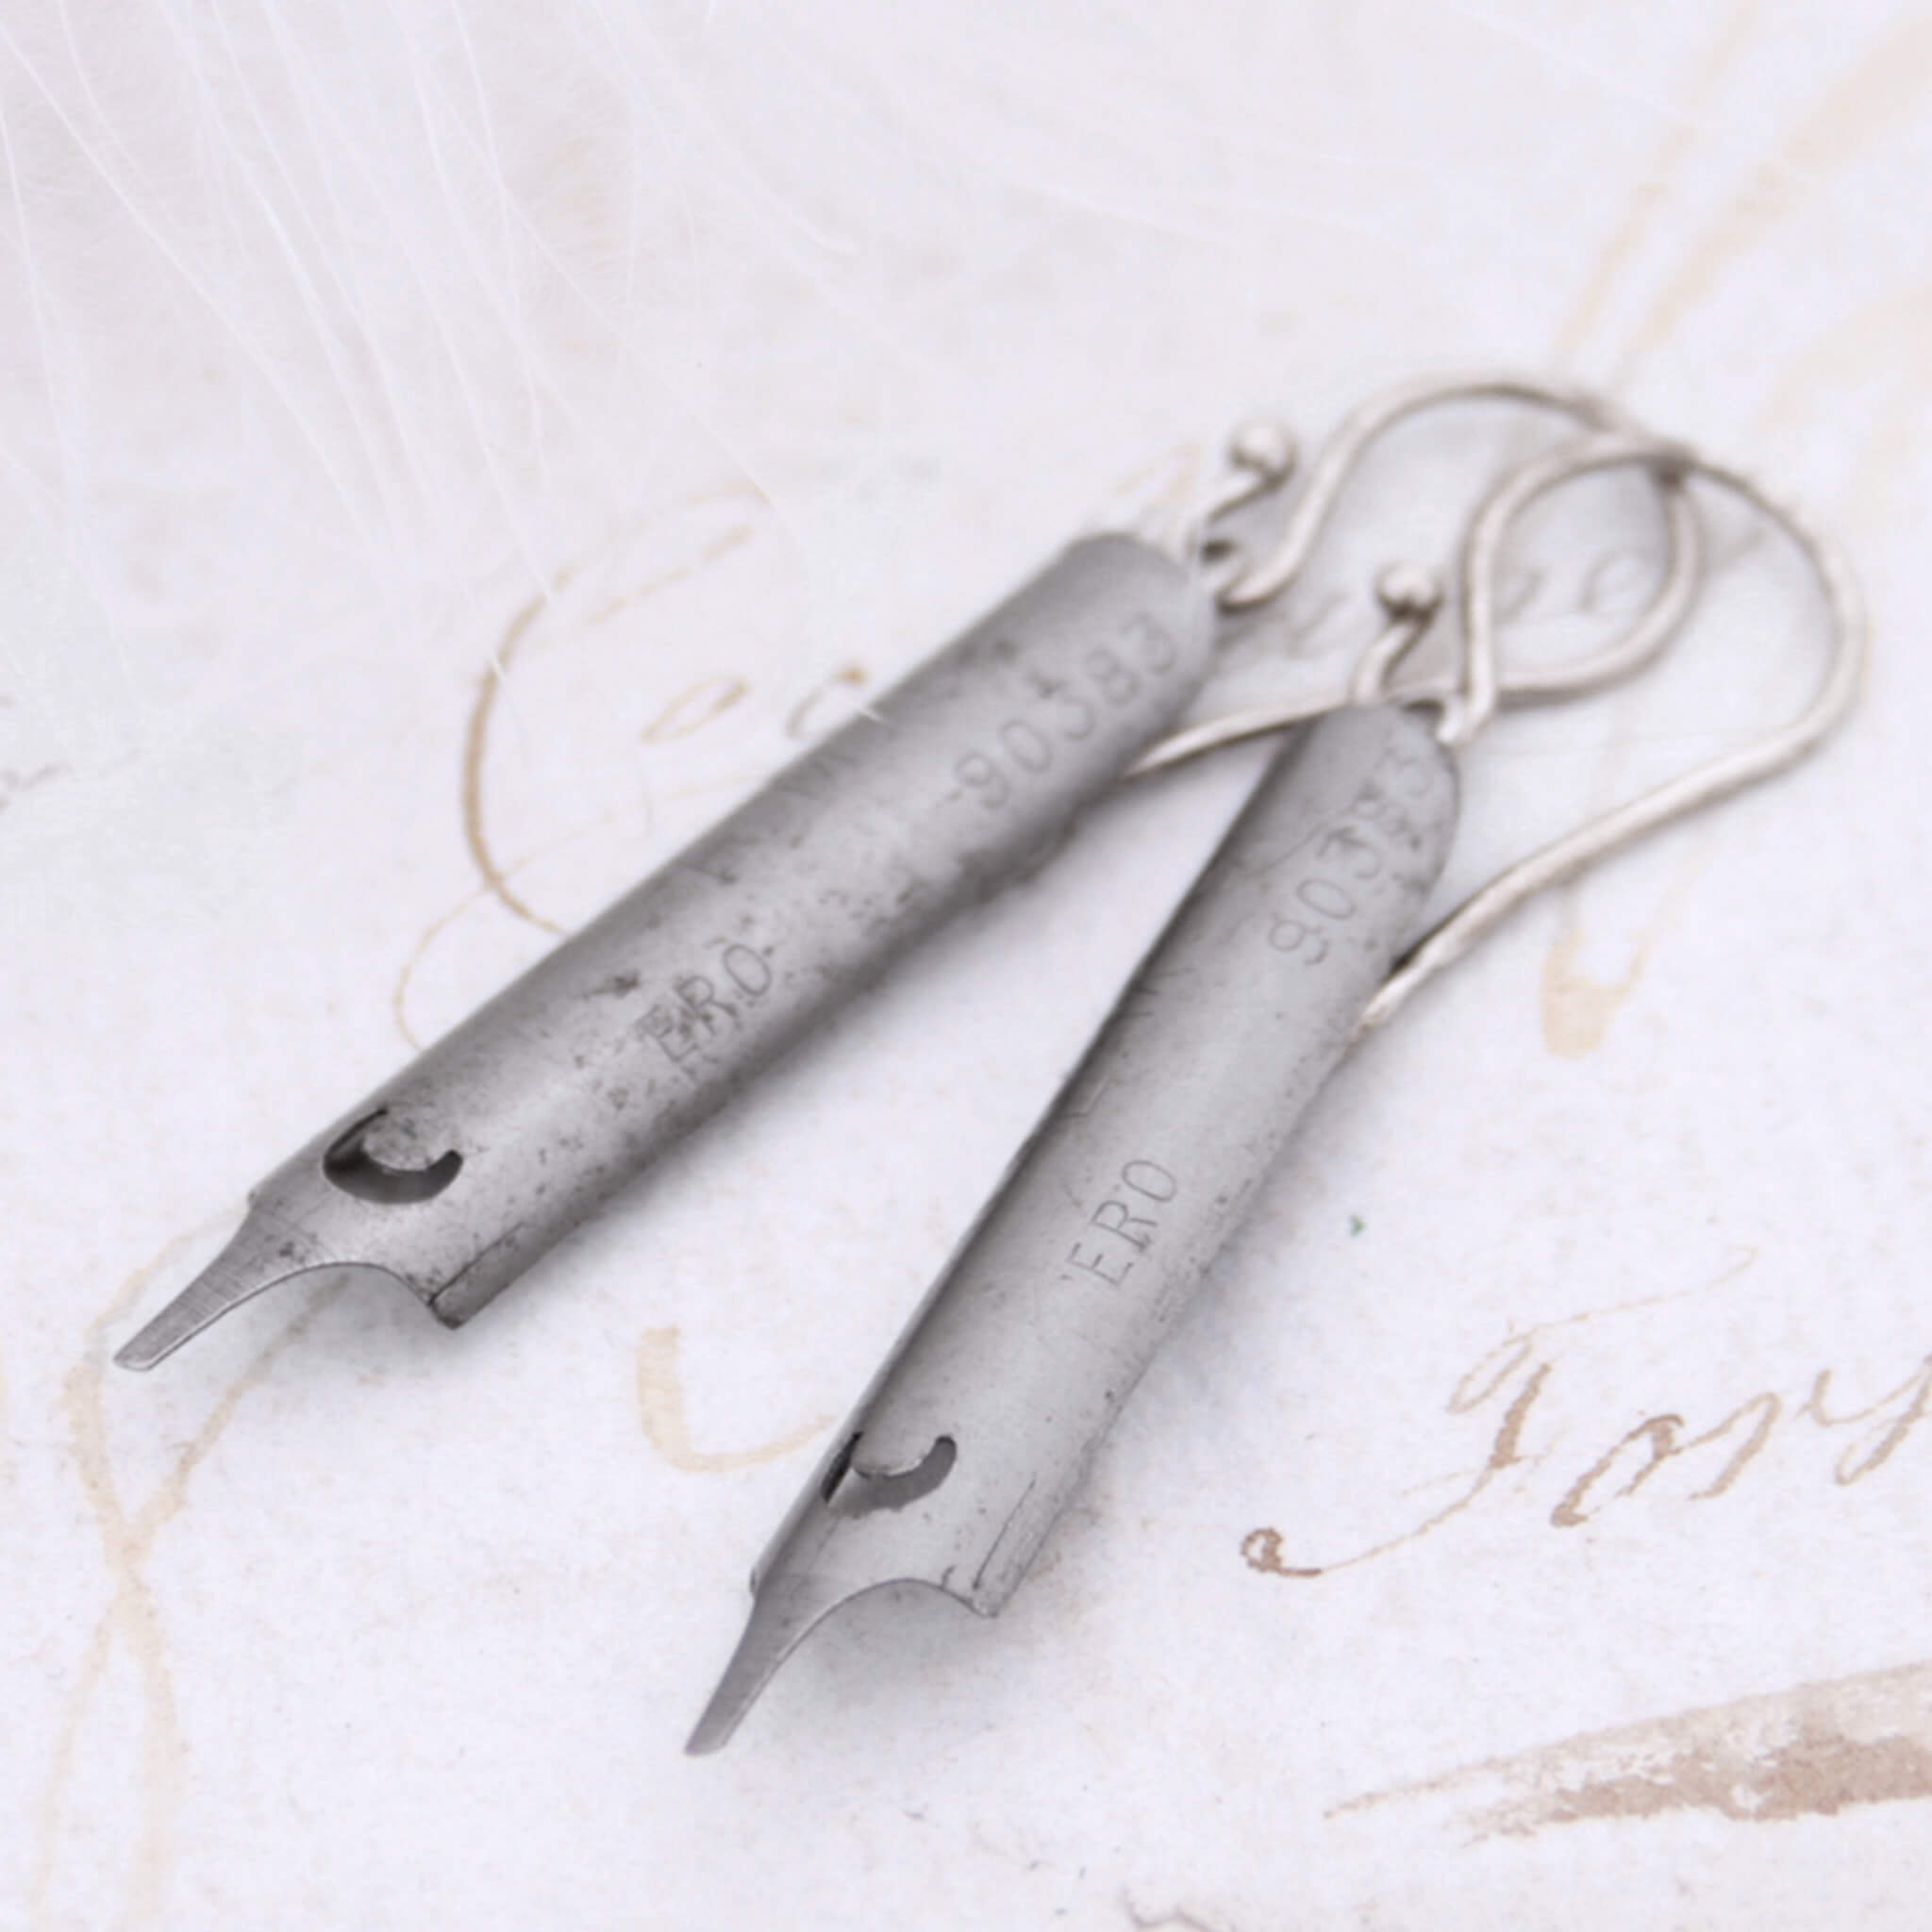 steel pen nib earrings lying on an old letter